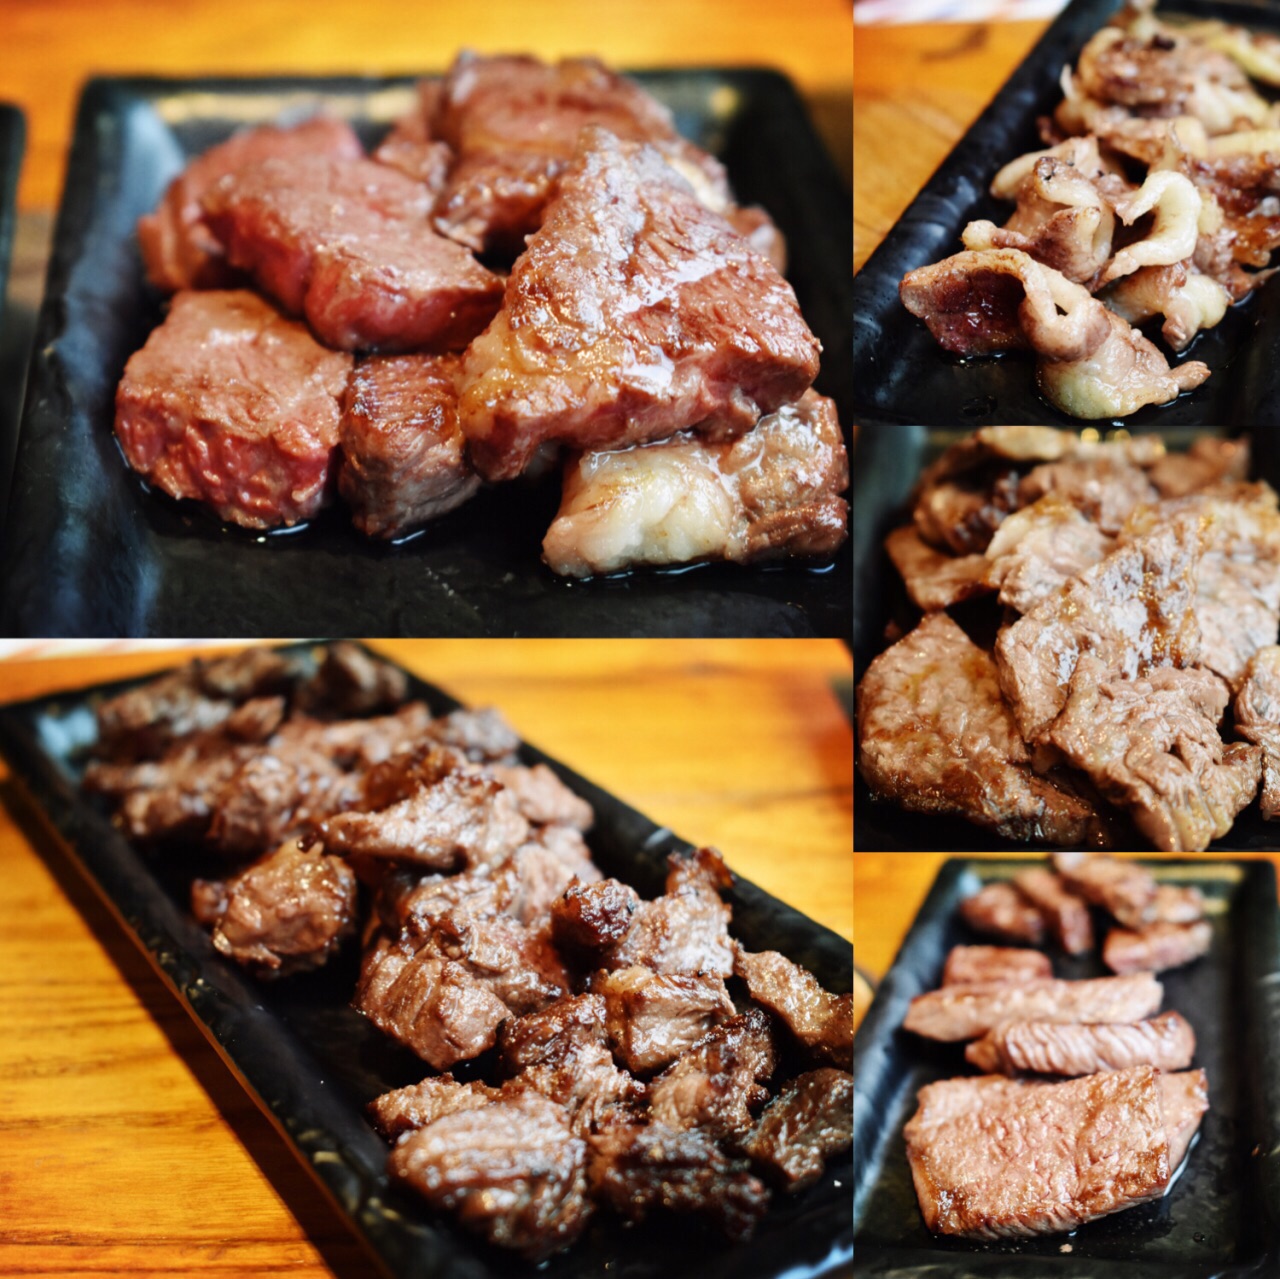 2022平安道·黑毛和牛(望京店)美食餐厅,烤肉是重头戏,牛肉为主,牛